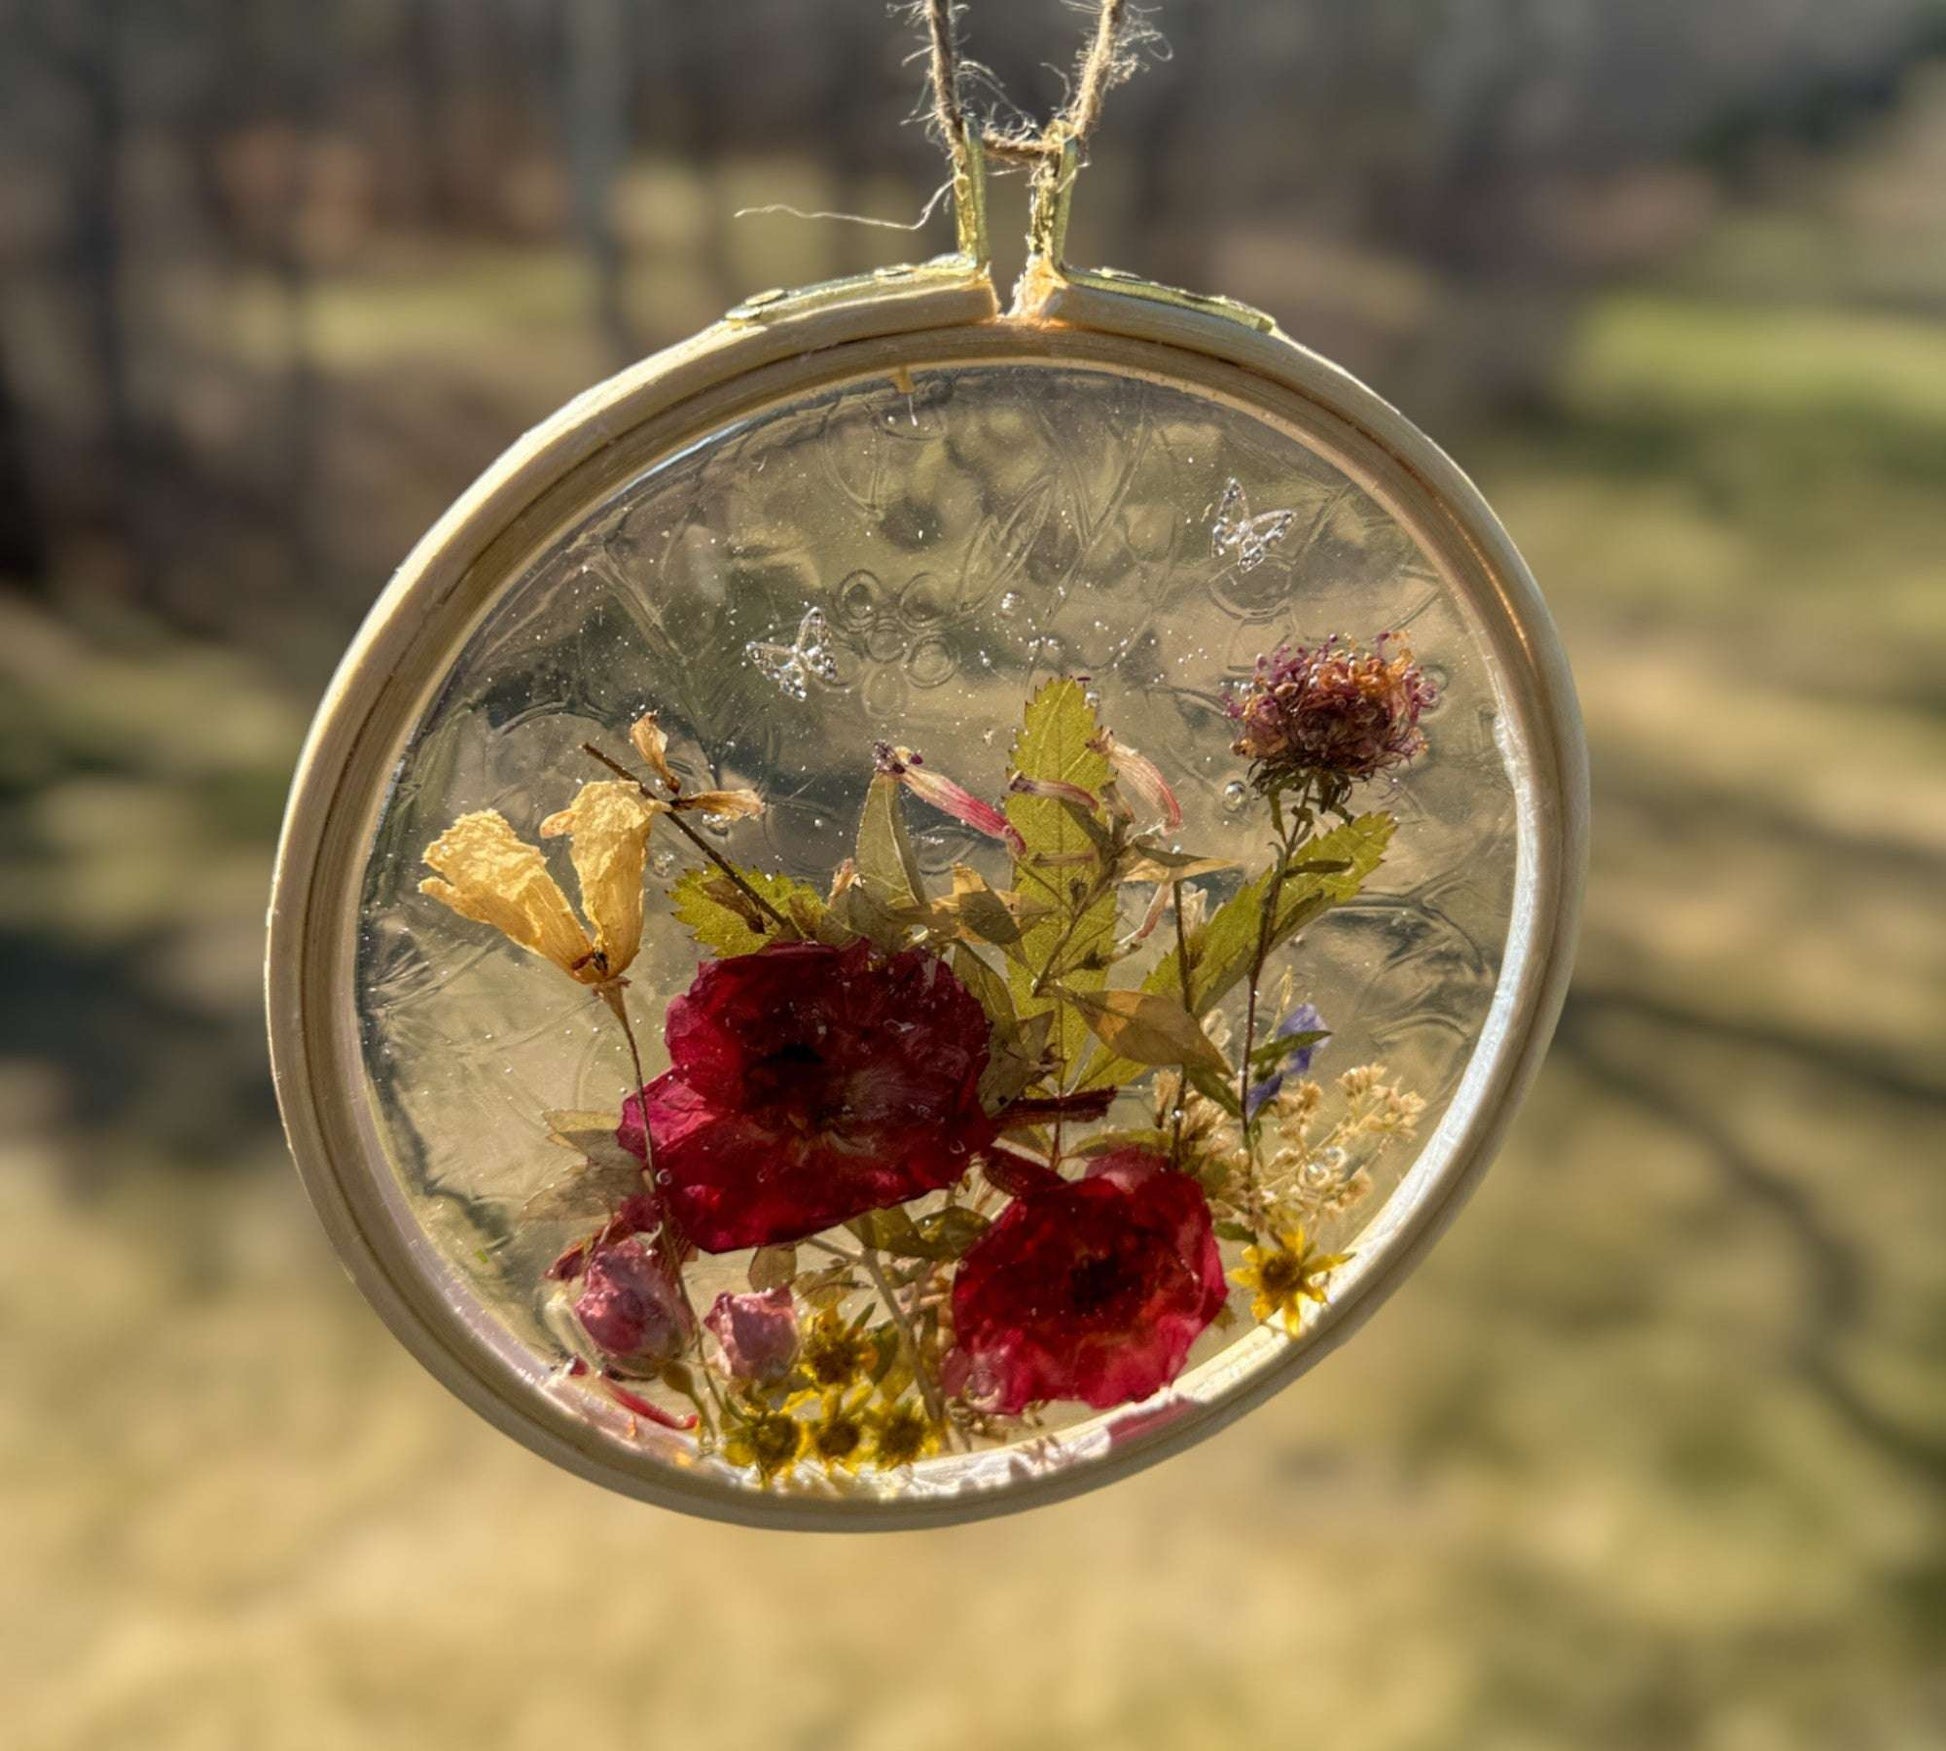 Suncatcher - Enchanted Rose Resin Garden Handmade with Wild Roses